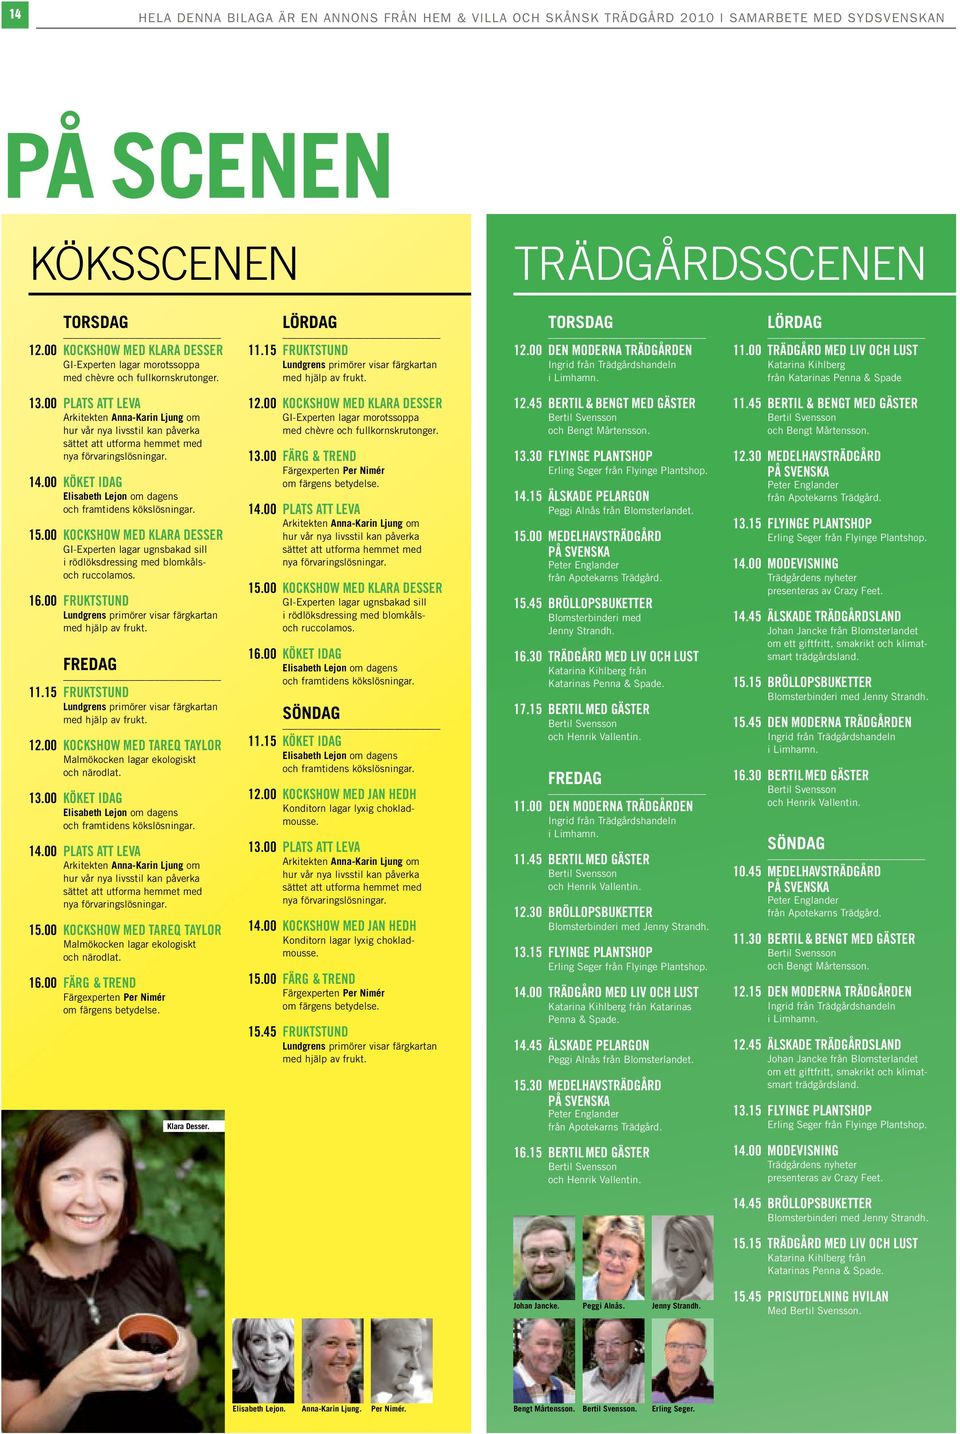 00 Den moderna trädgården Ingrid från Trädgårdshandeln i Limhamn. lördag 11.00 Trädgård med liv och lust Katarina Kihlberg från Katarinas Penna & Spade 13.